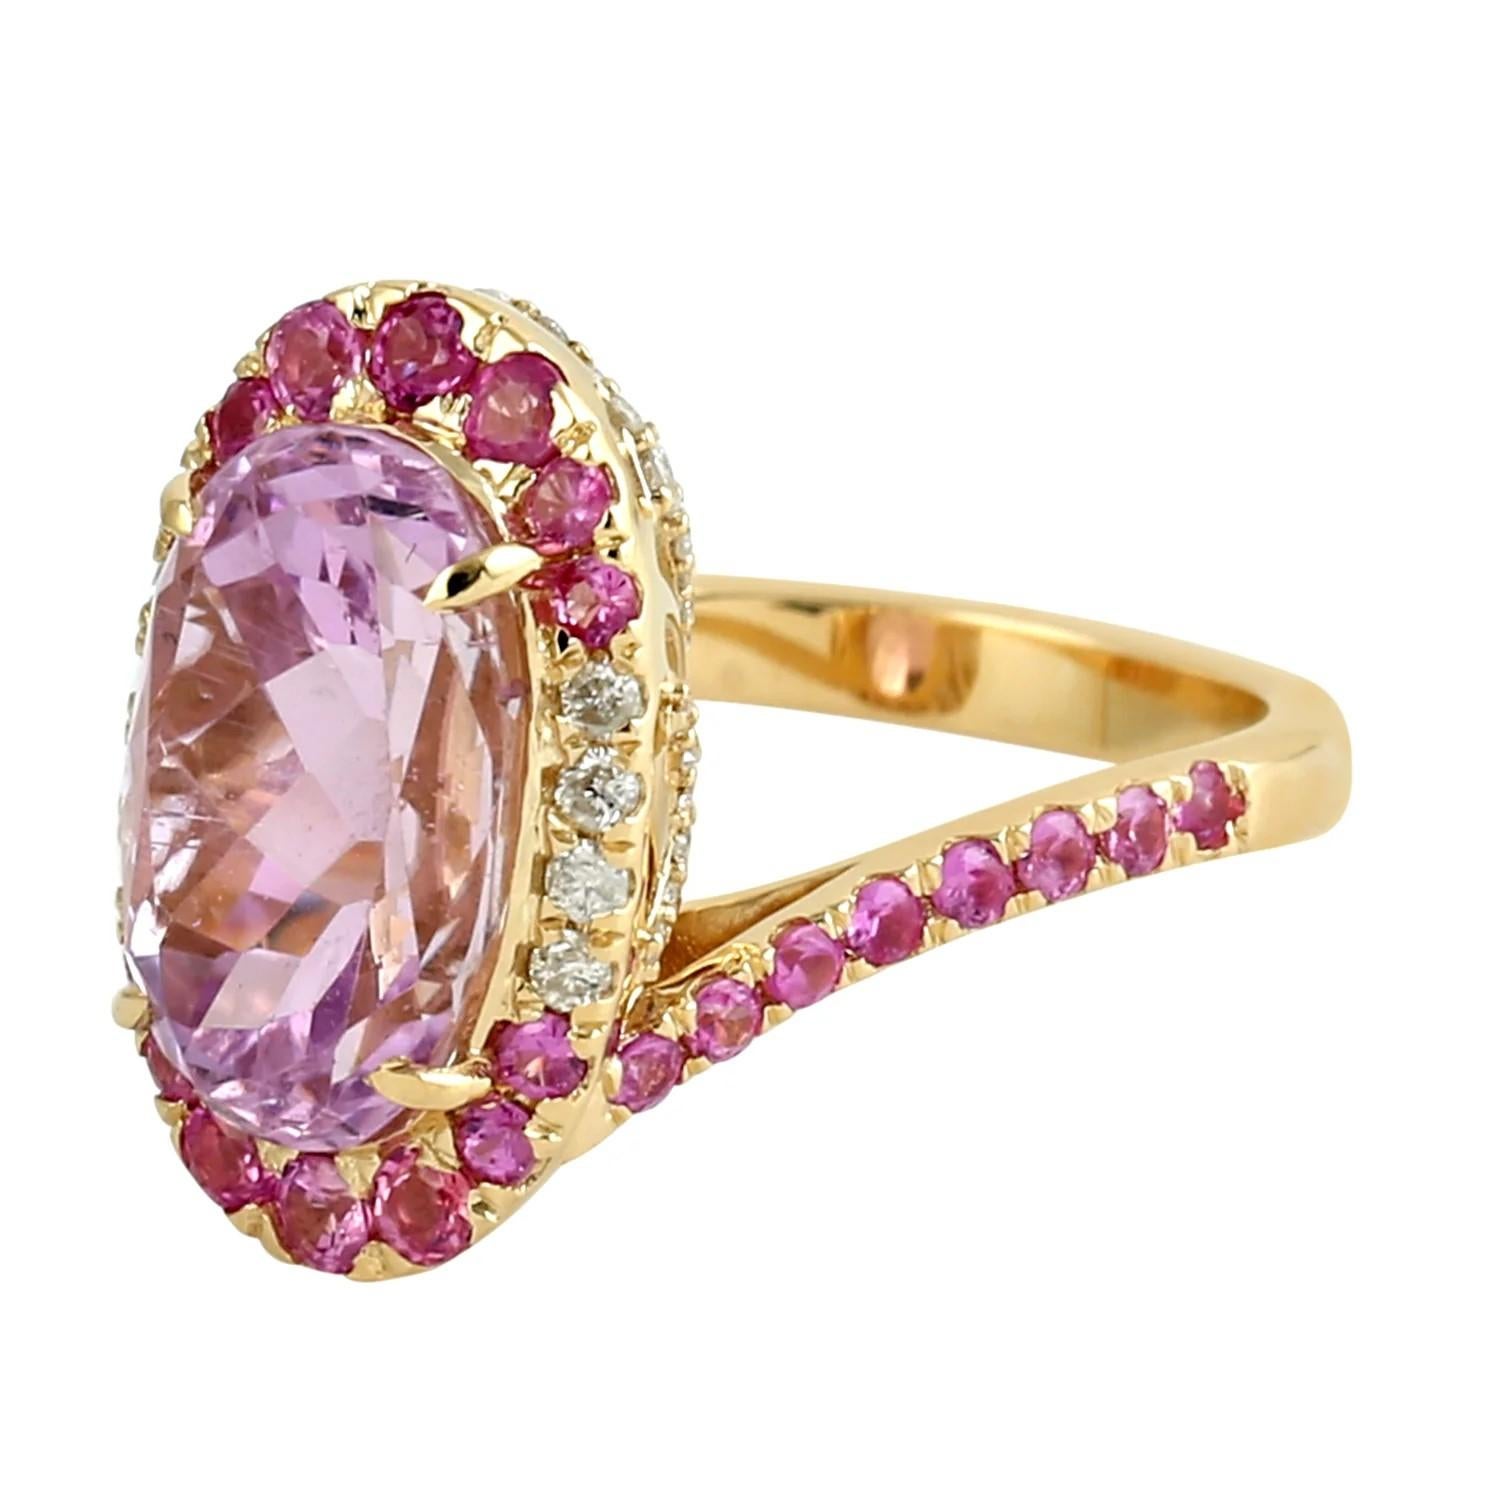 Oval Cut Meghna Jewels 6.39 Carats Kunzite Diamond 18 Karat Gold Ring For Sale